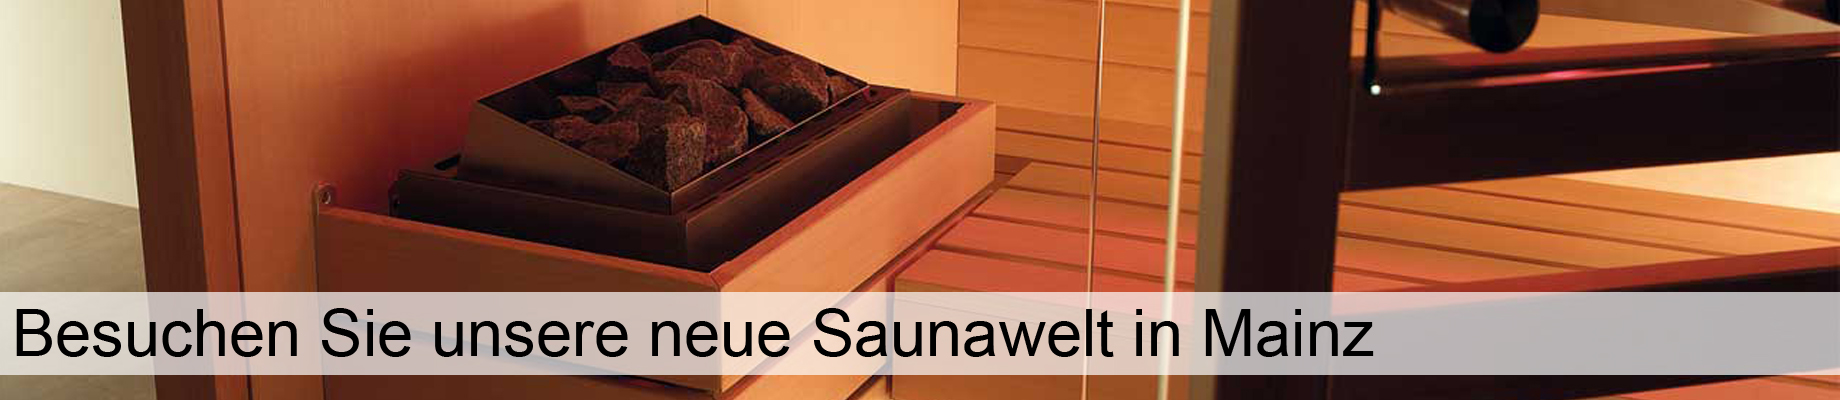 Saunawelt Ausstellung Sauna Mainz